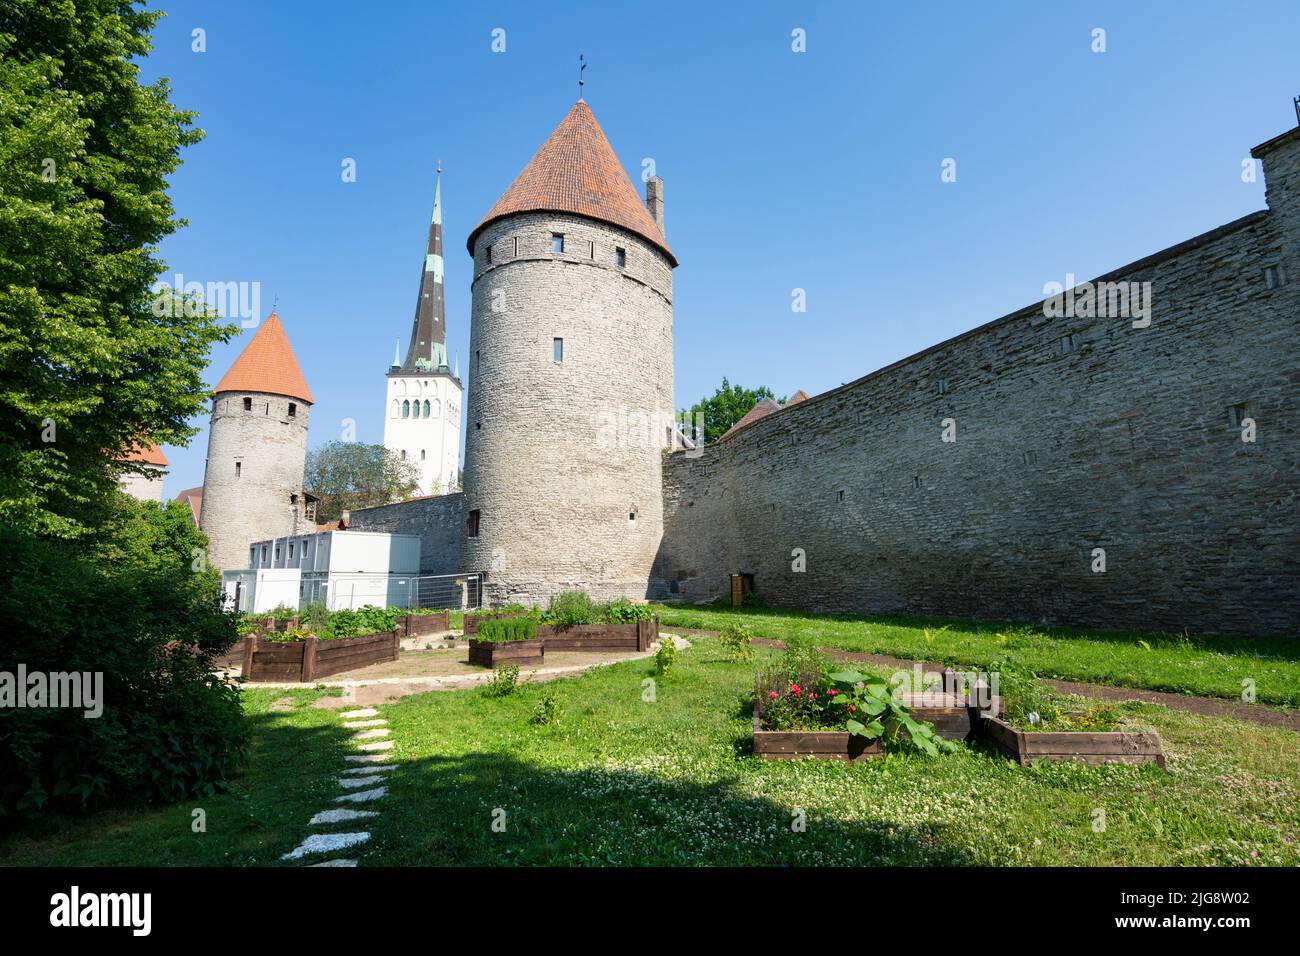 Tallinn, Estonia. Luglio 2022. Il giardino comunale della città vecchia, situato nel centro della città, è stato ispirato dal medievale non-Hildegard e la sua visione del gro Foto Stock